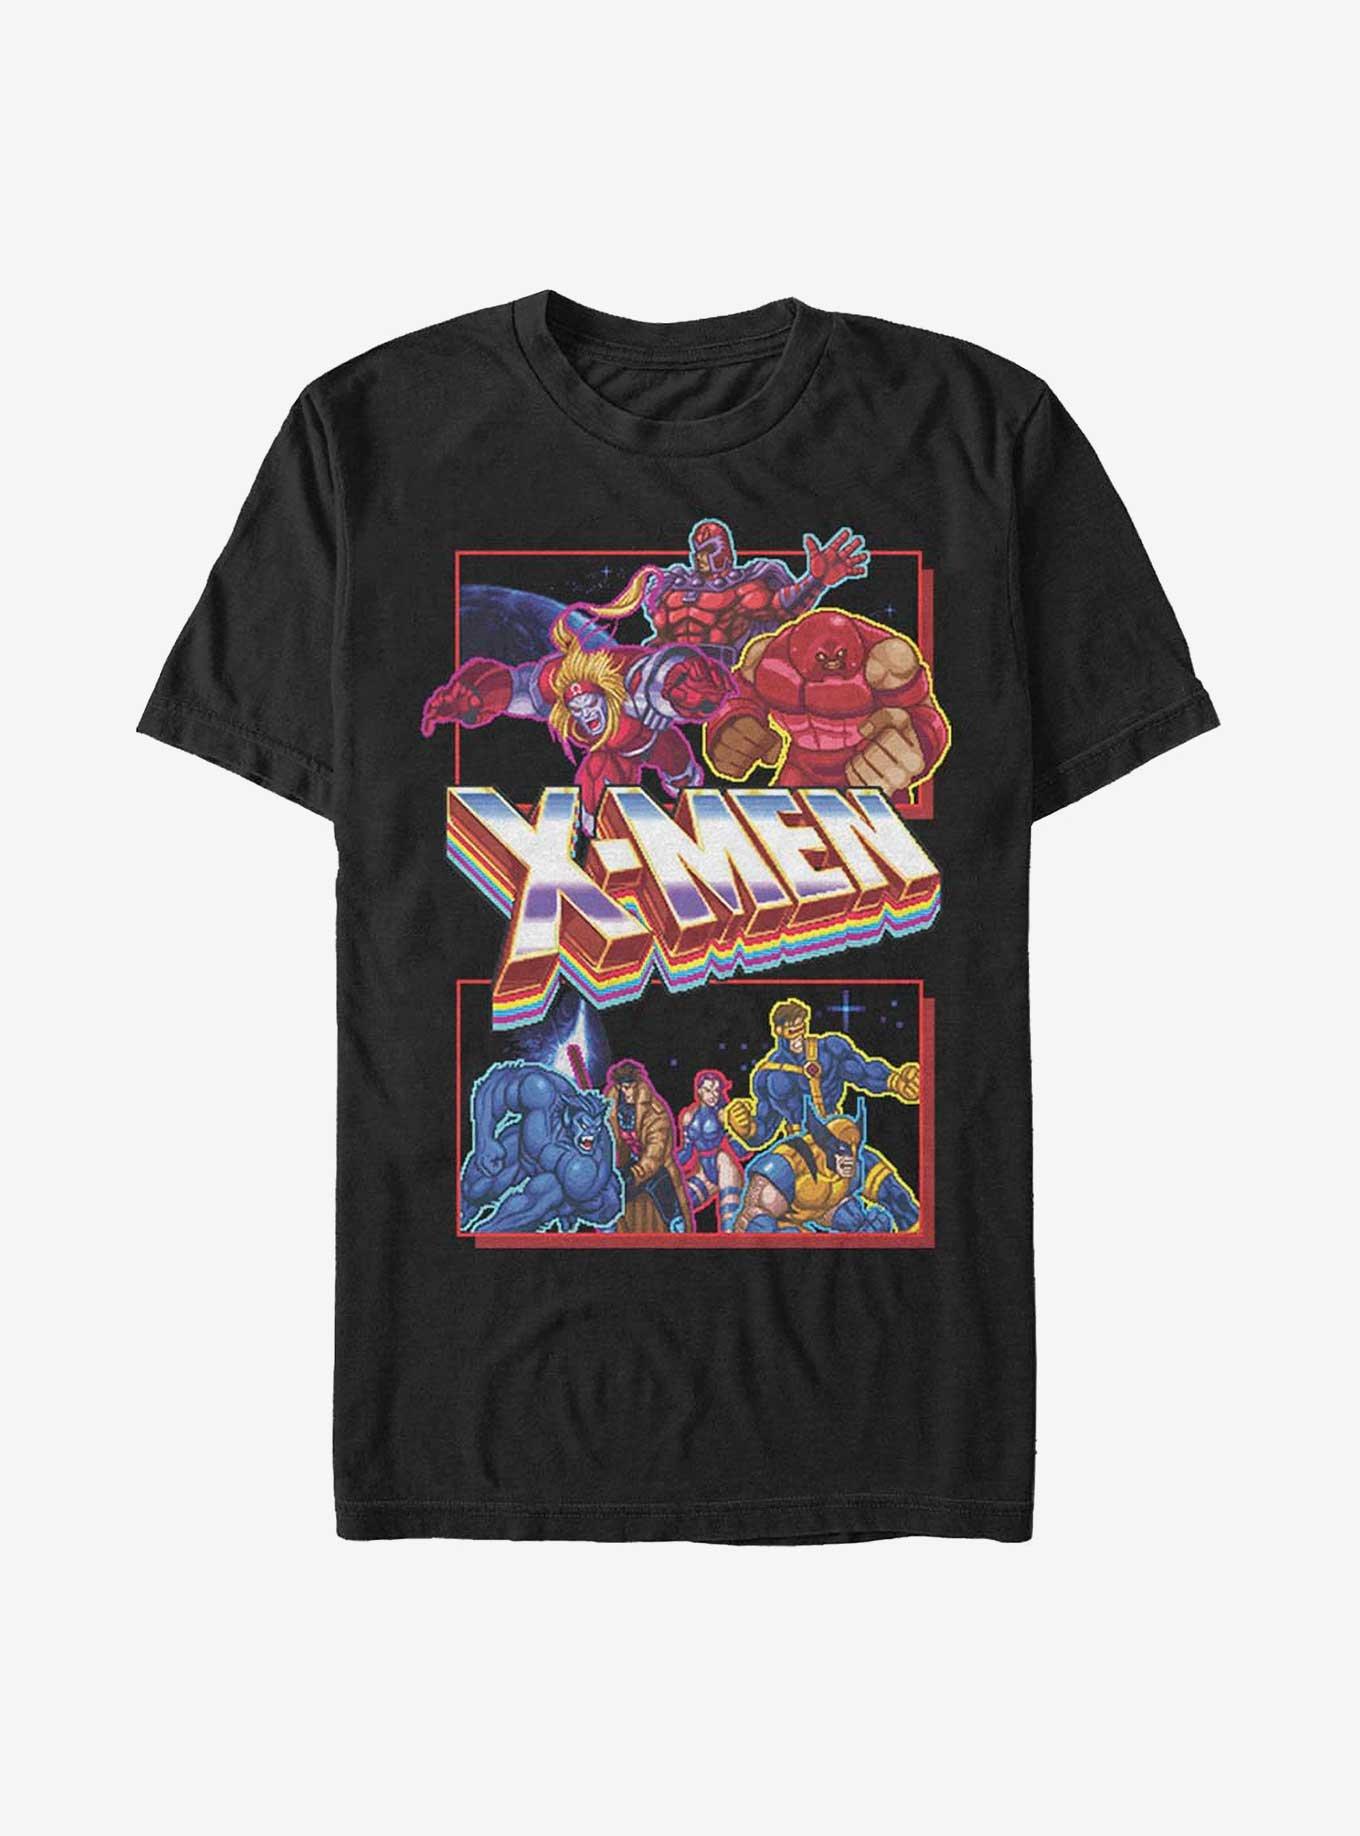 X-Men Arcade Fight T-Shirt, BLACK, hi-res